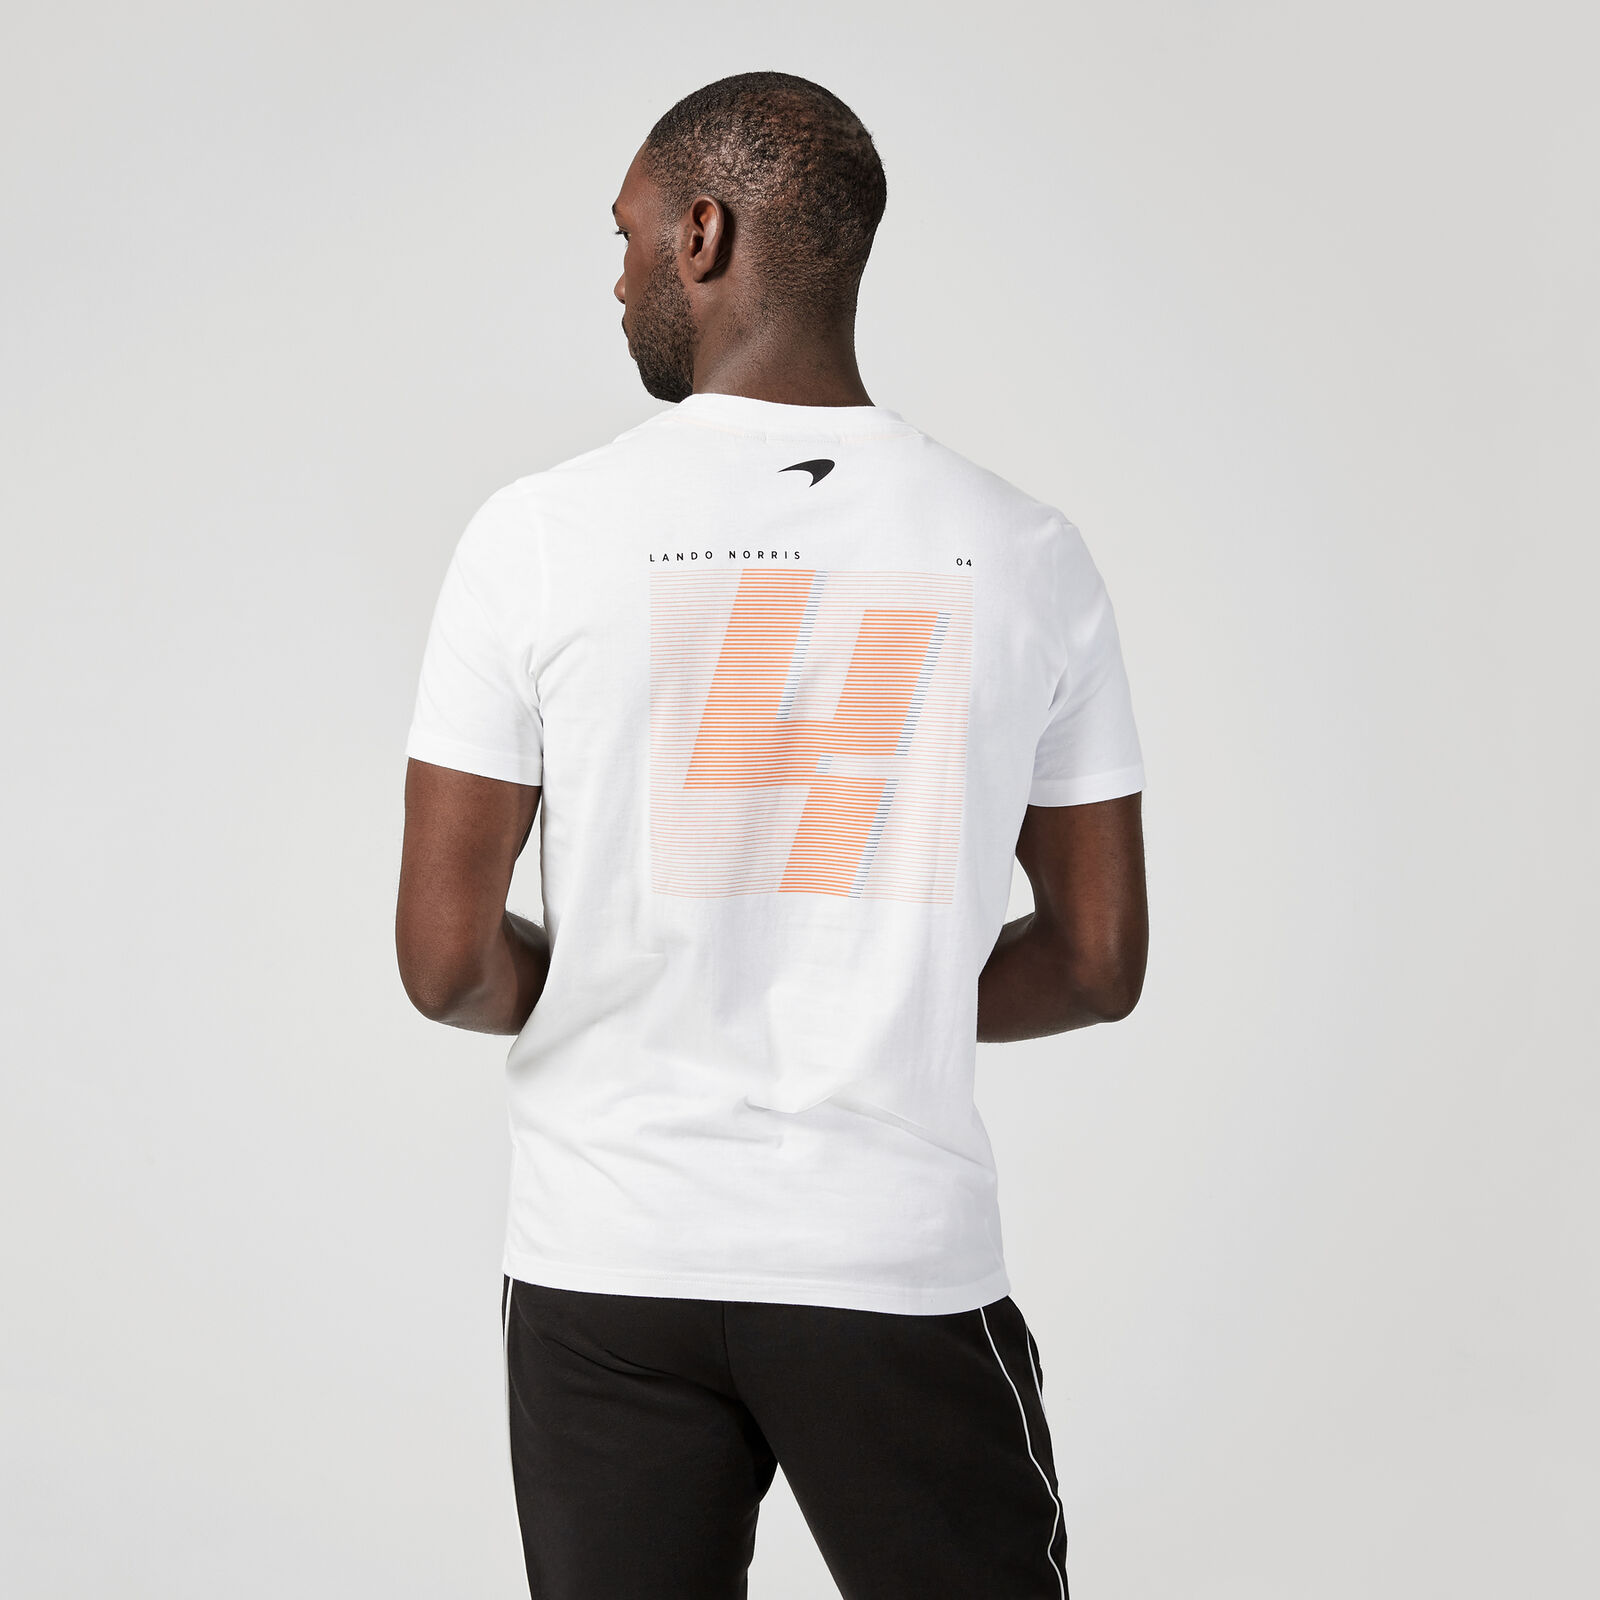 Lando Norris 4 T-Shirt - McLaren F1 | Fuel For Fans